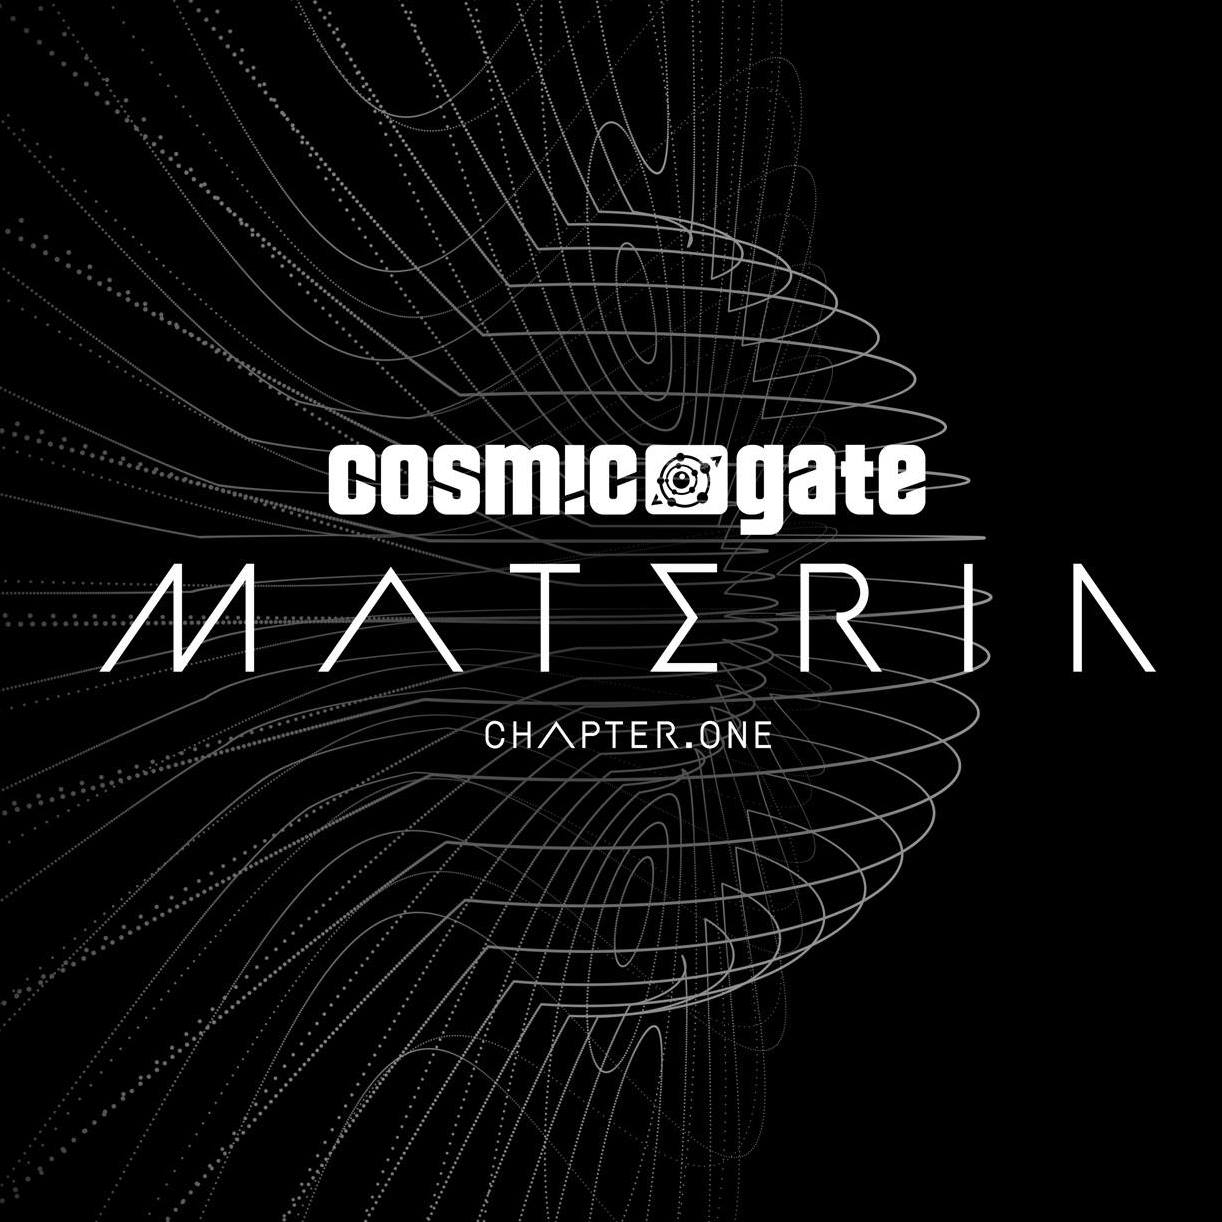 Cosmic Gate - Materia